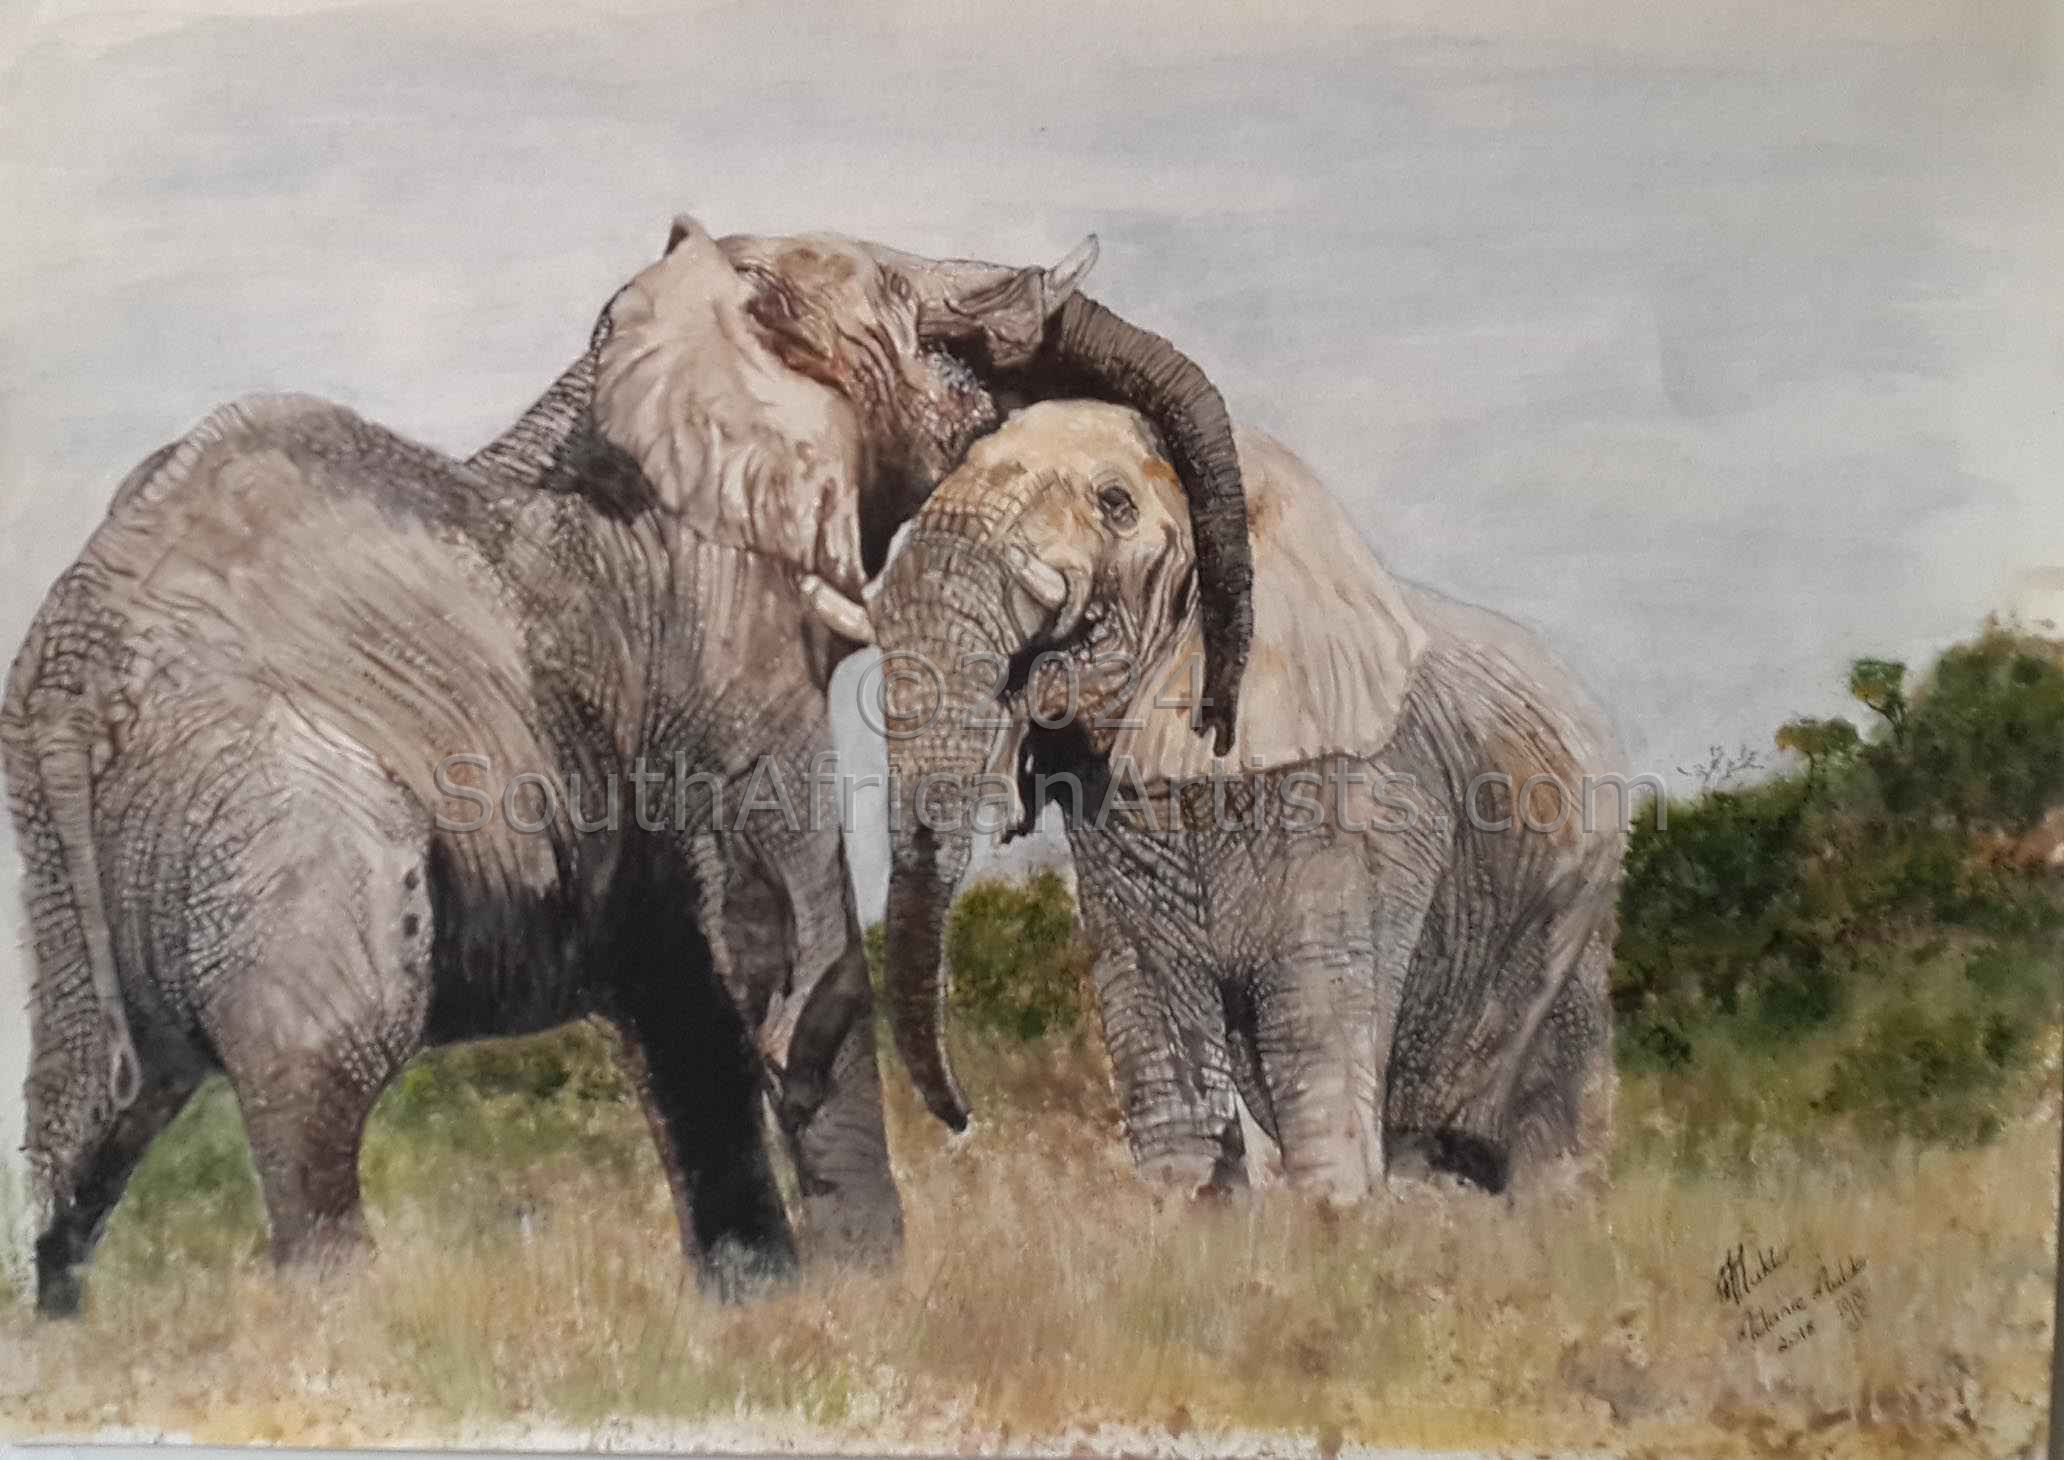 Elephants: Old Friends